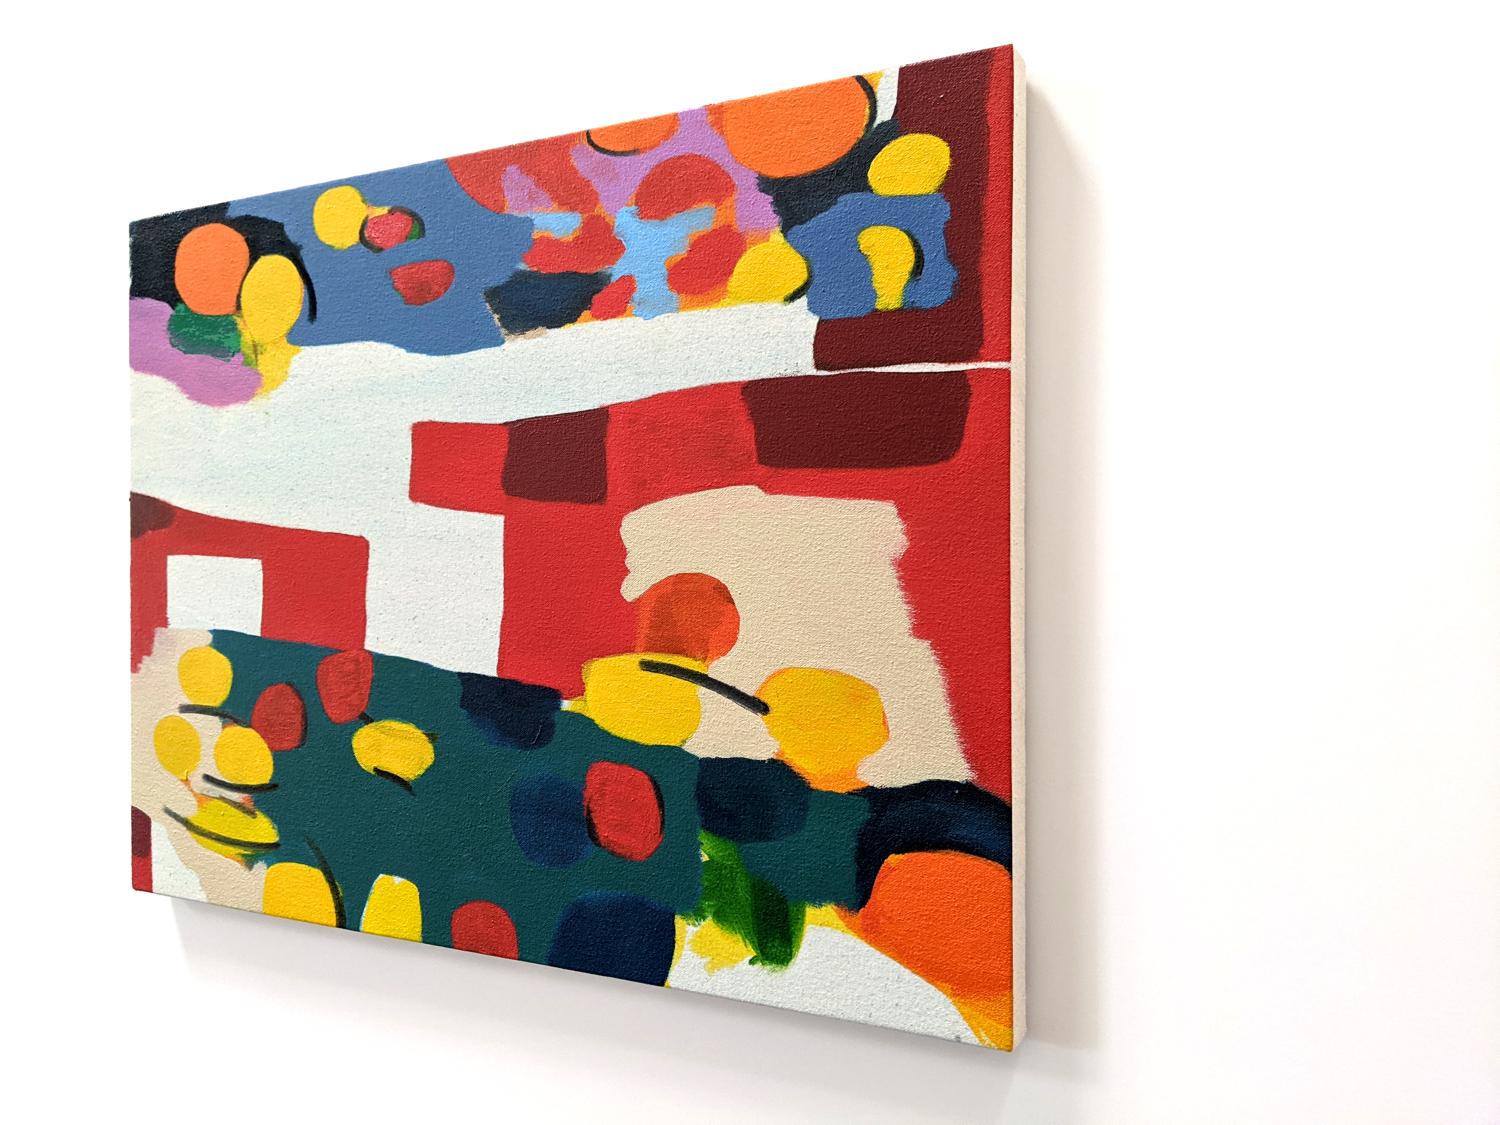 Dans cette charmante composition abstraite de Mel Davis, née à Montréal, une éruption de couleurs vives, orange, jaune, bleu profond et mauve, se détache sur le fond d'une nappe rouge. Davis a été influencé par les œuvres colorées et fluides de